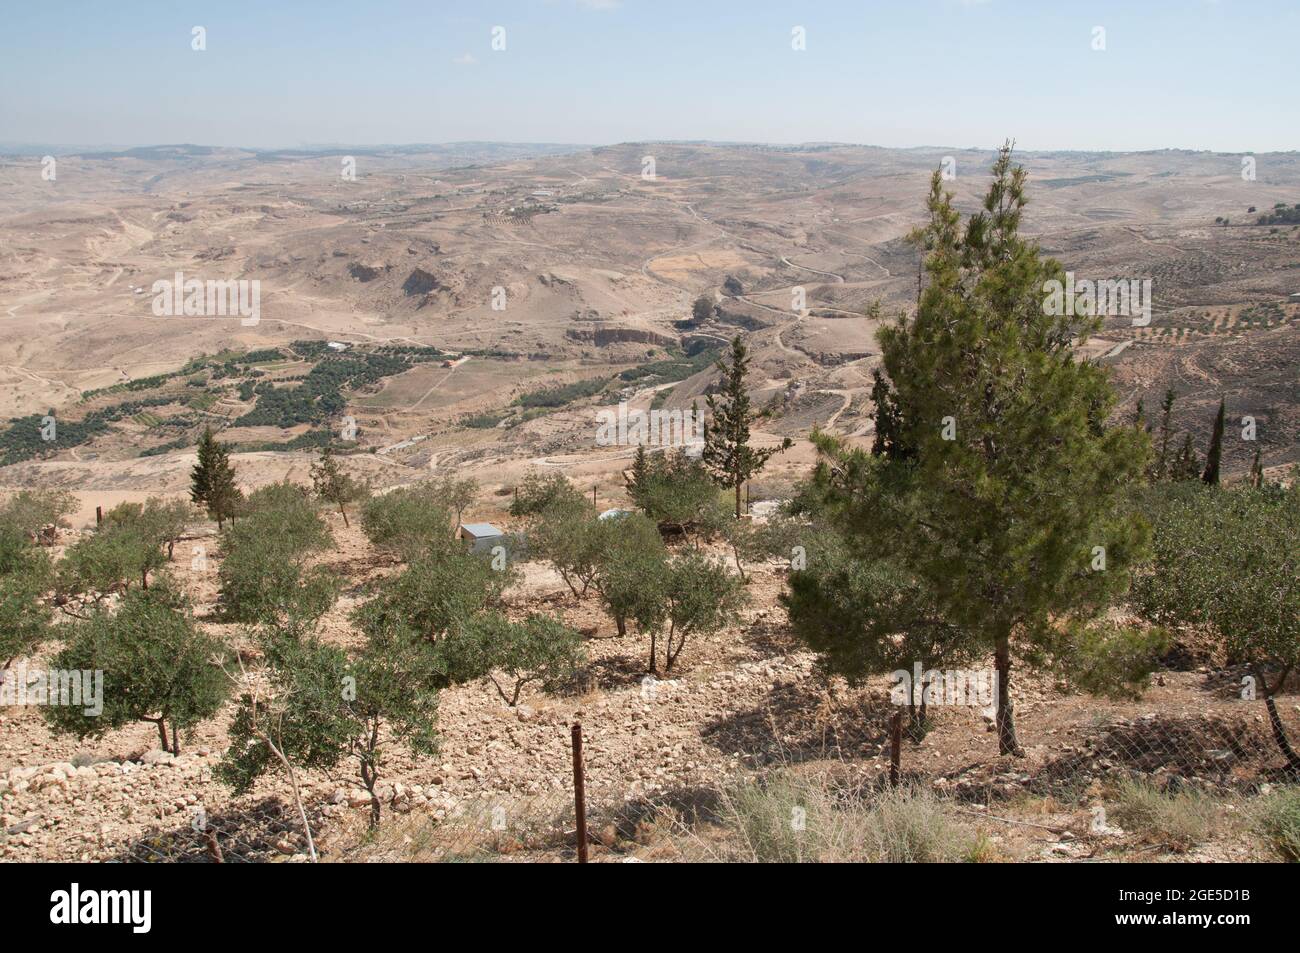 Vue depuis le mont Nebo, la Jordanie et le Moyen-Orient. Peu de végétation, terre sèche. Moïse est censé avoir vu la terre promise d'ici et est mort sur le M. Banque D'Images